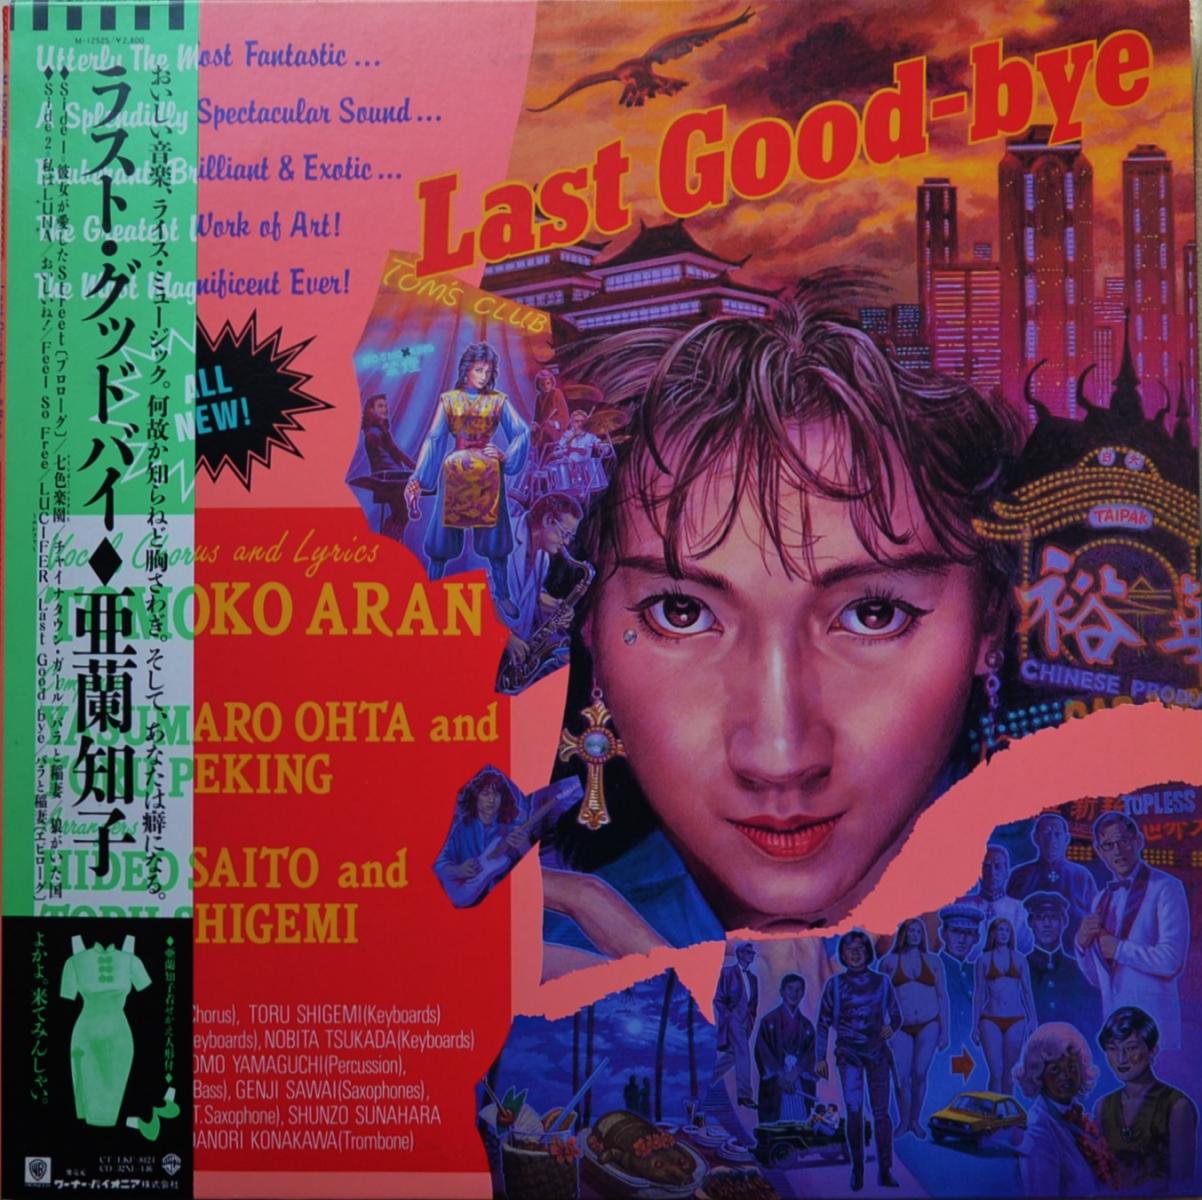 亜蘭知子 TOMOKO ARAN / ラスト・グッドバイ LAST GOOD-BYE (LP)